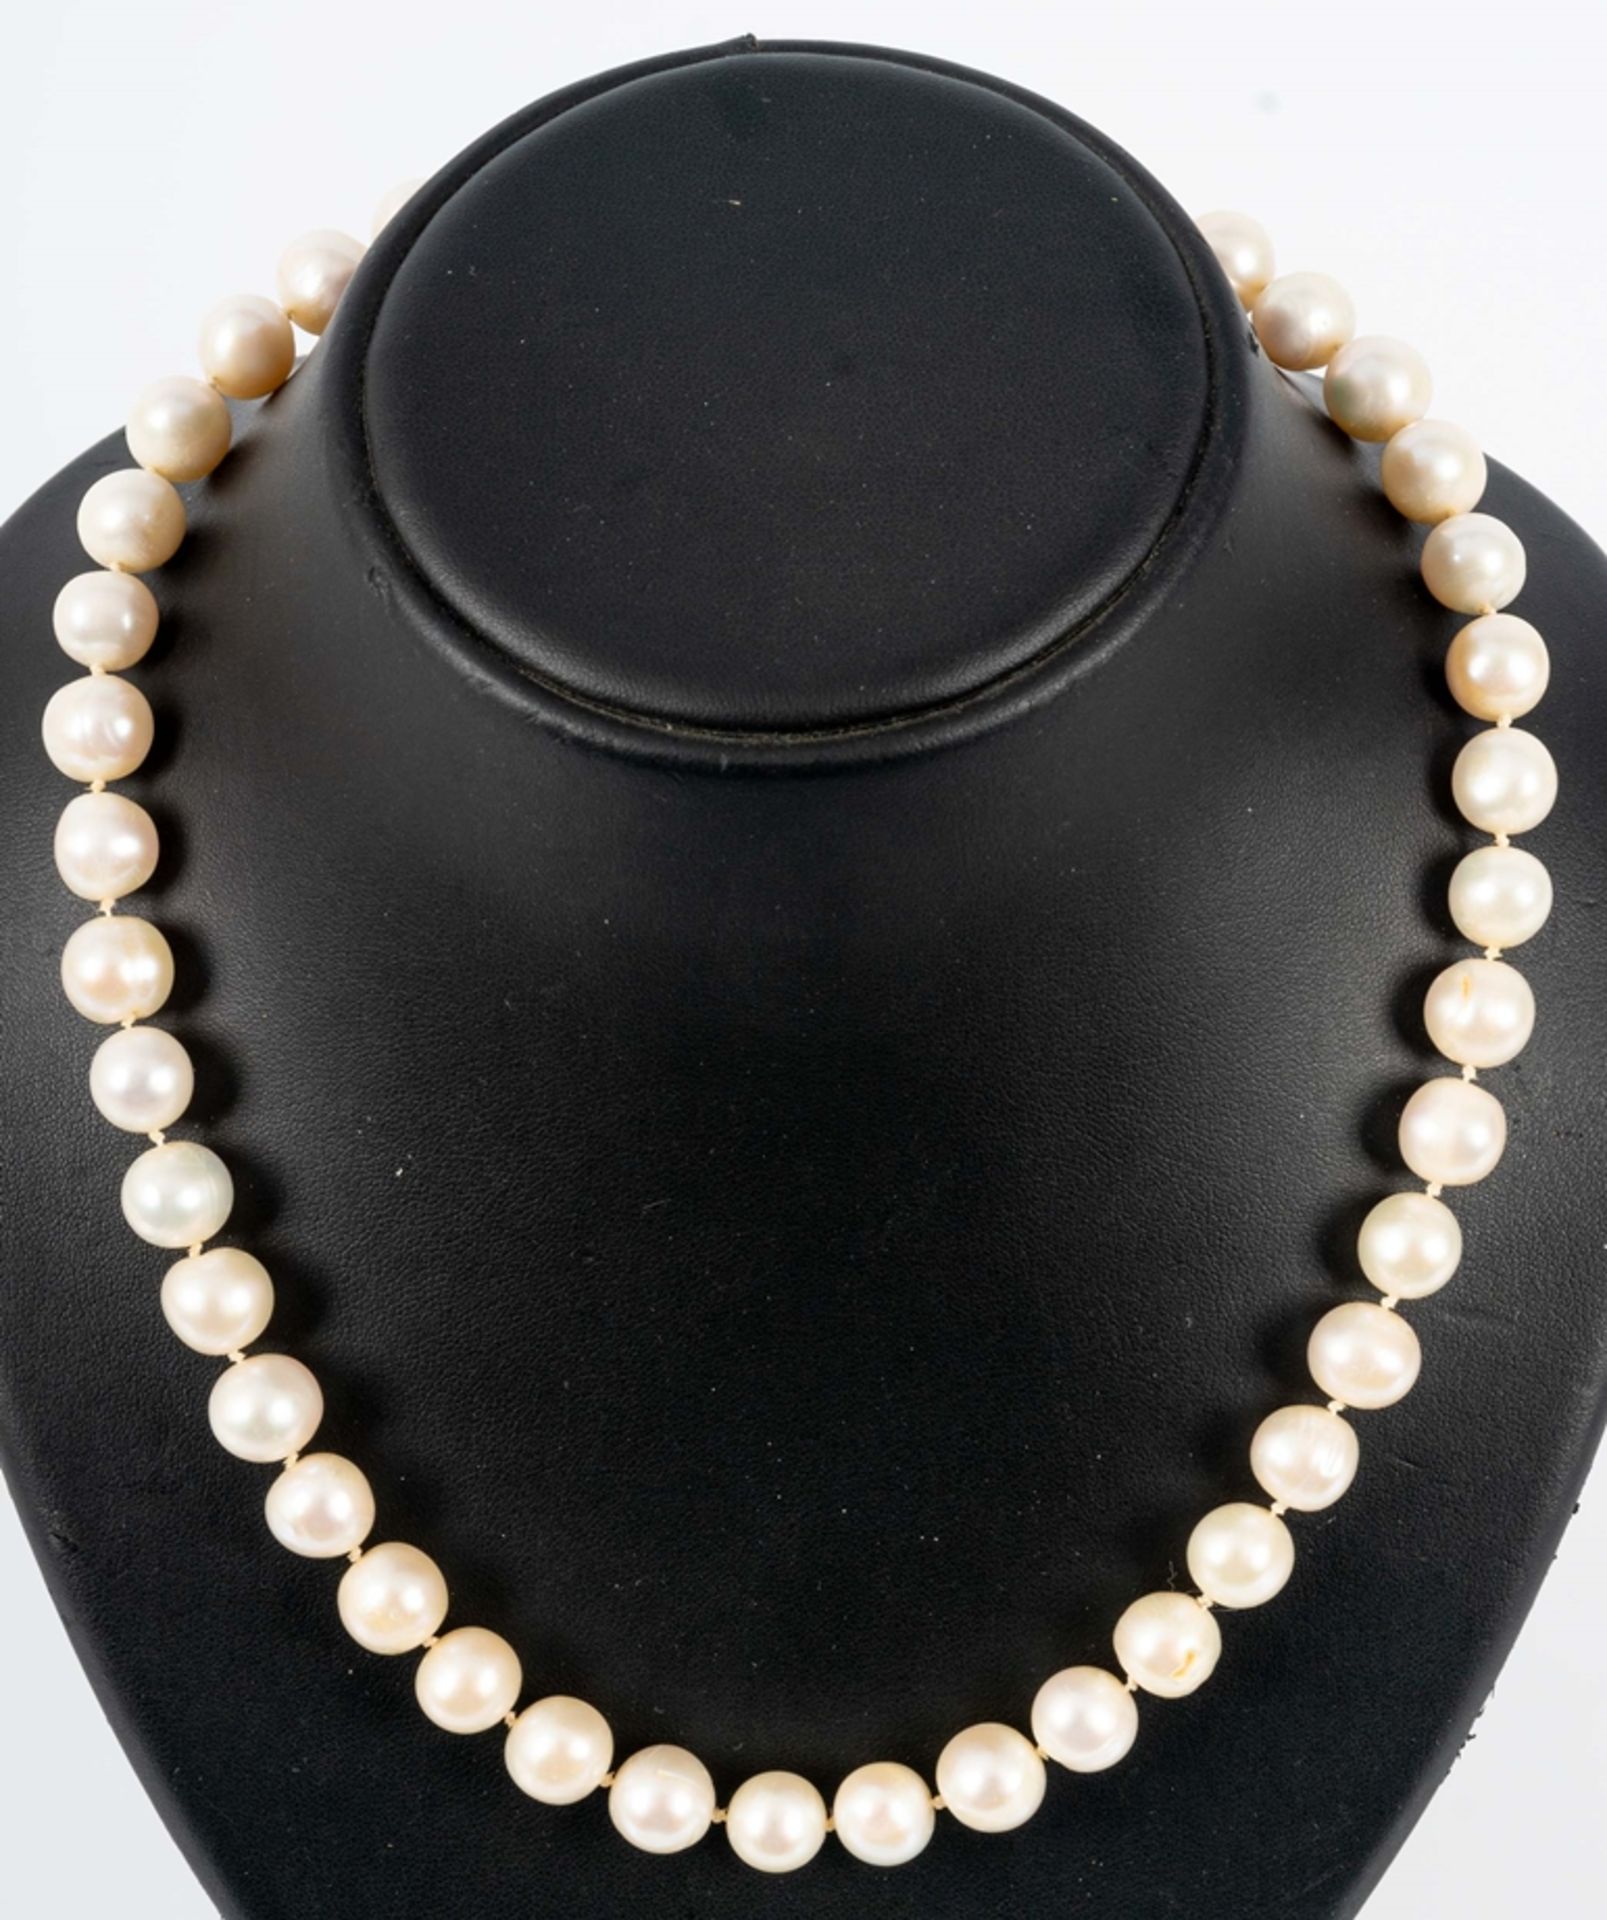 Perlenkette mit 585er Weiß- & Gelbgold-Kugelverschluss ( Durchmesser ca. 1,3 cm), Perlen in silbrig